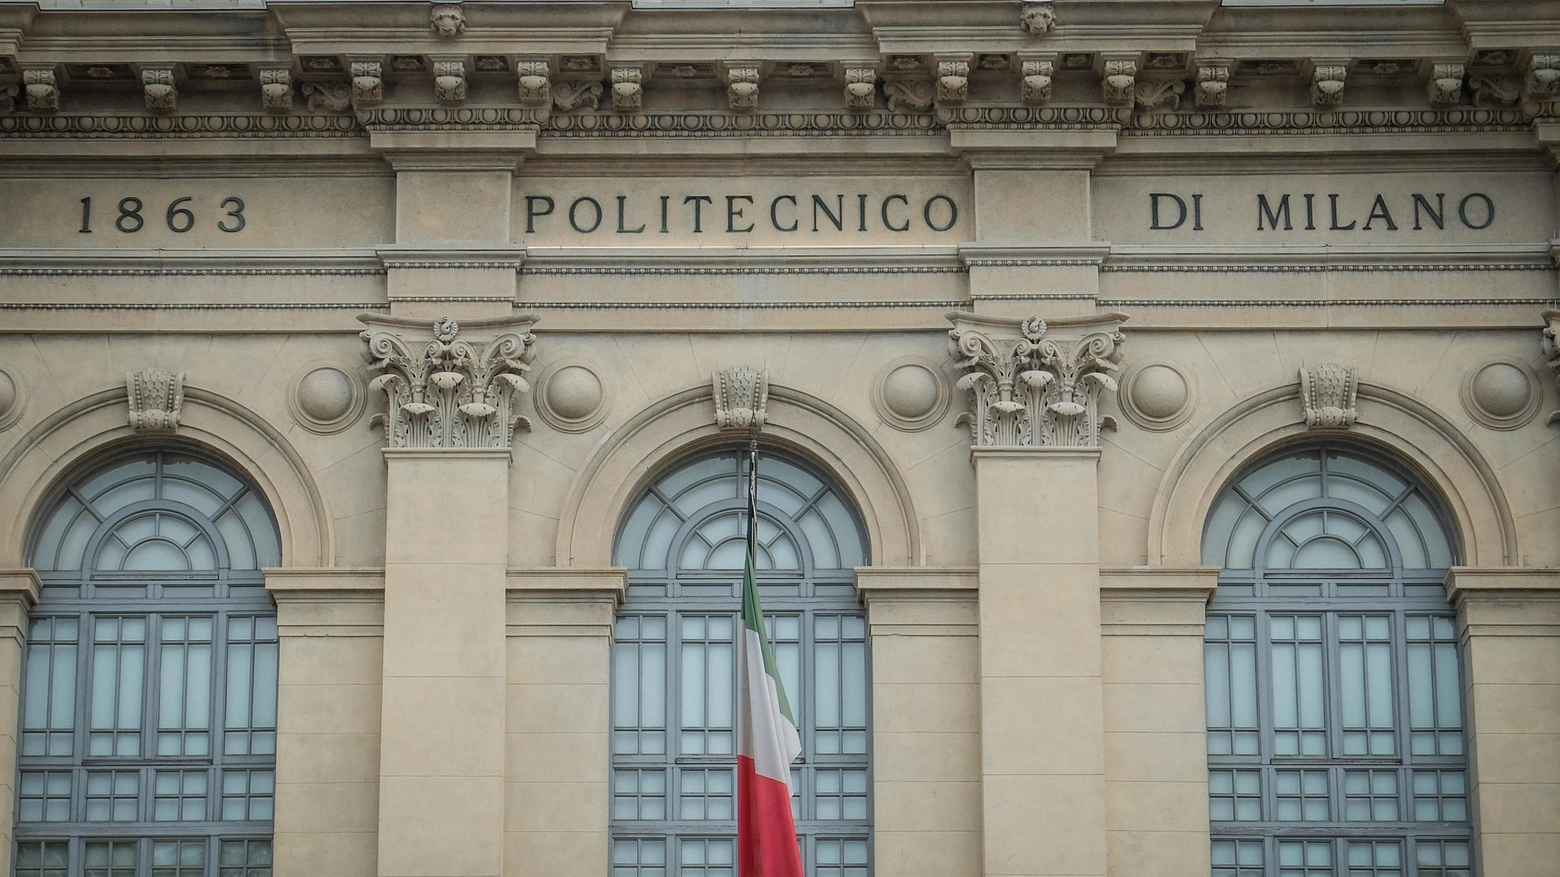 La facciata del Politecnico a Milano